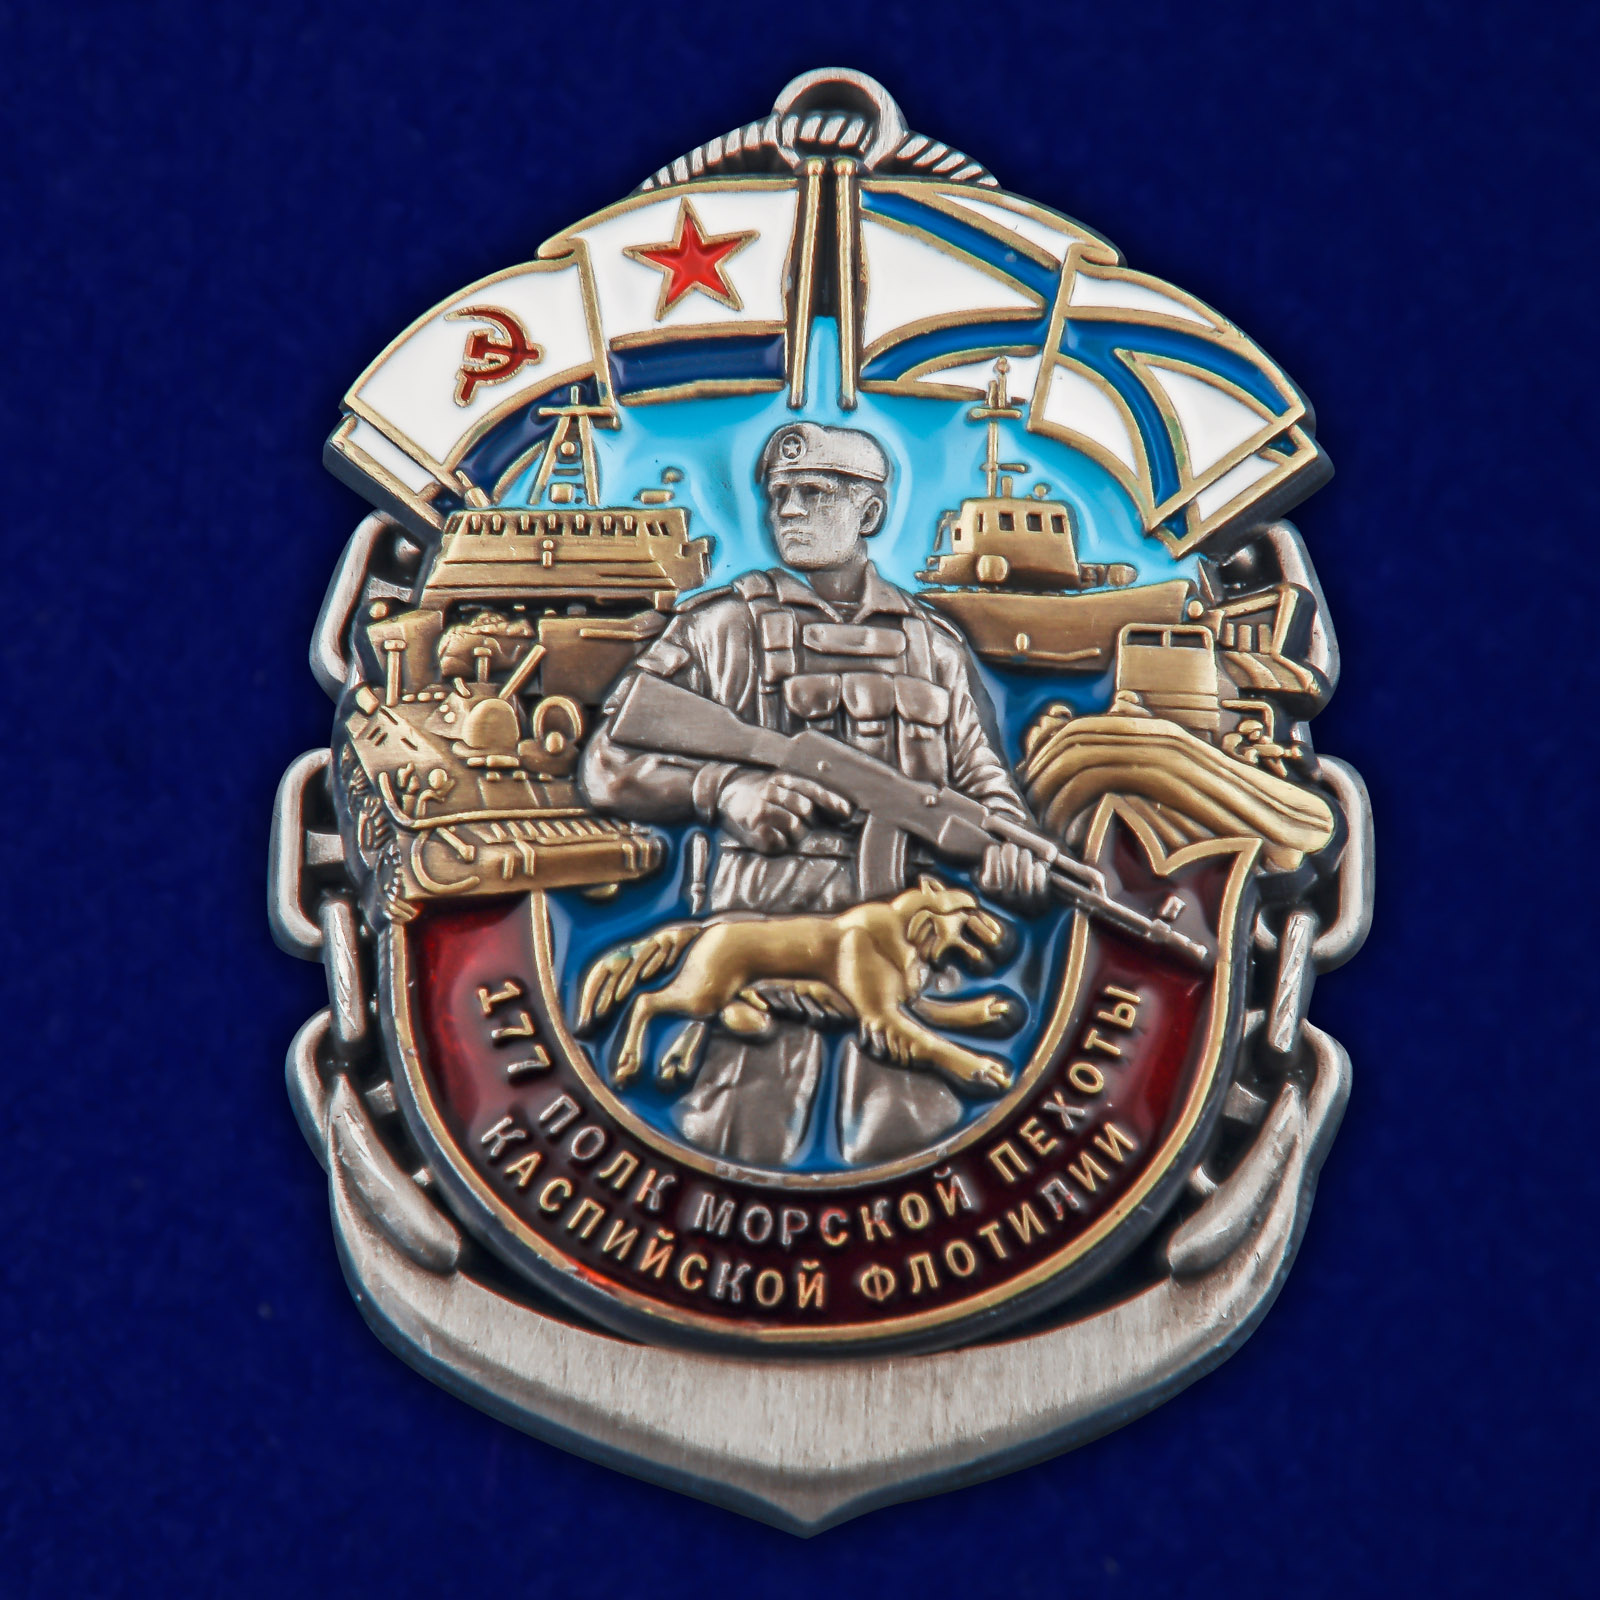 Купить латунный знак 177-й полк морской пехоты Каспийской флотилии выгодно